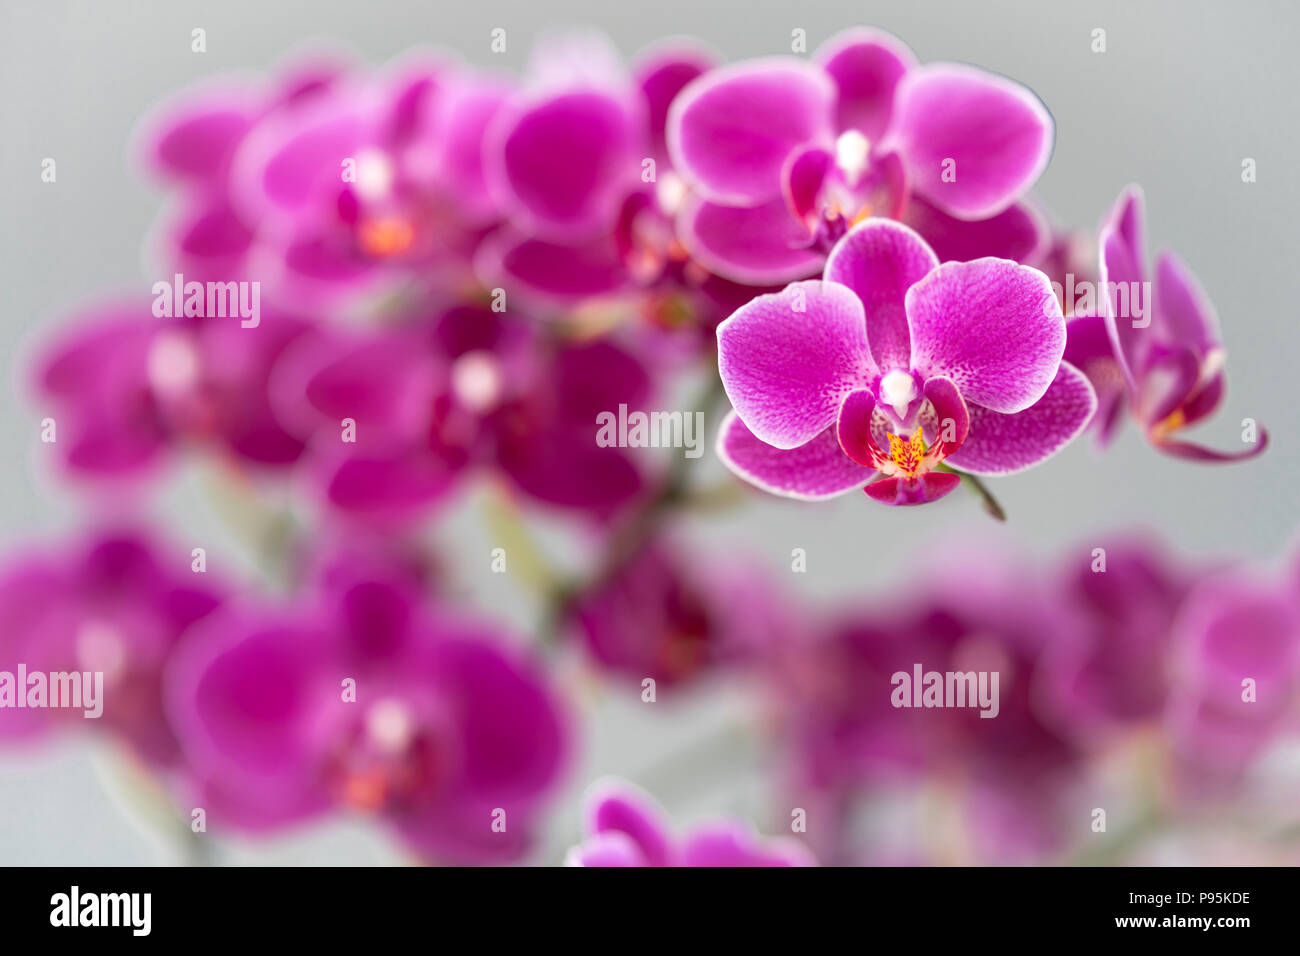 Une mise au point étroite sur un papillon de couleur magenta / rose orchid avec progressivement hors foyer fleurs derrière donner un effet de mise au point agréable Banque D'Images